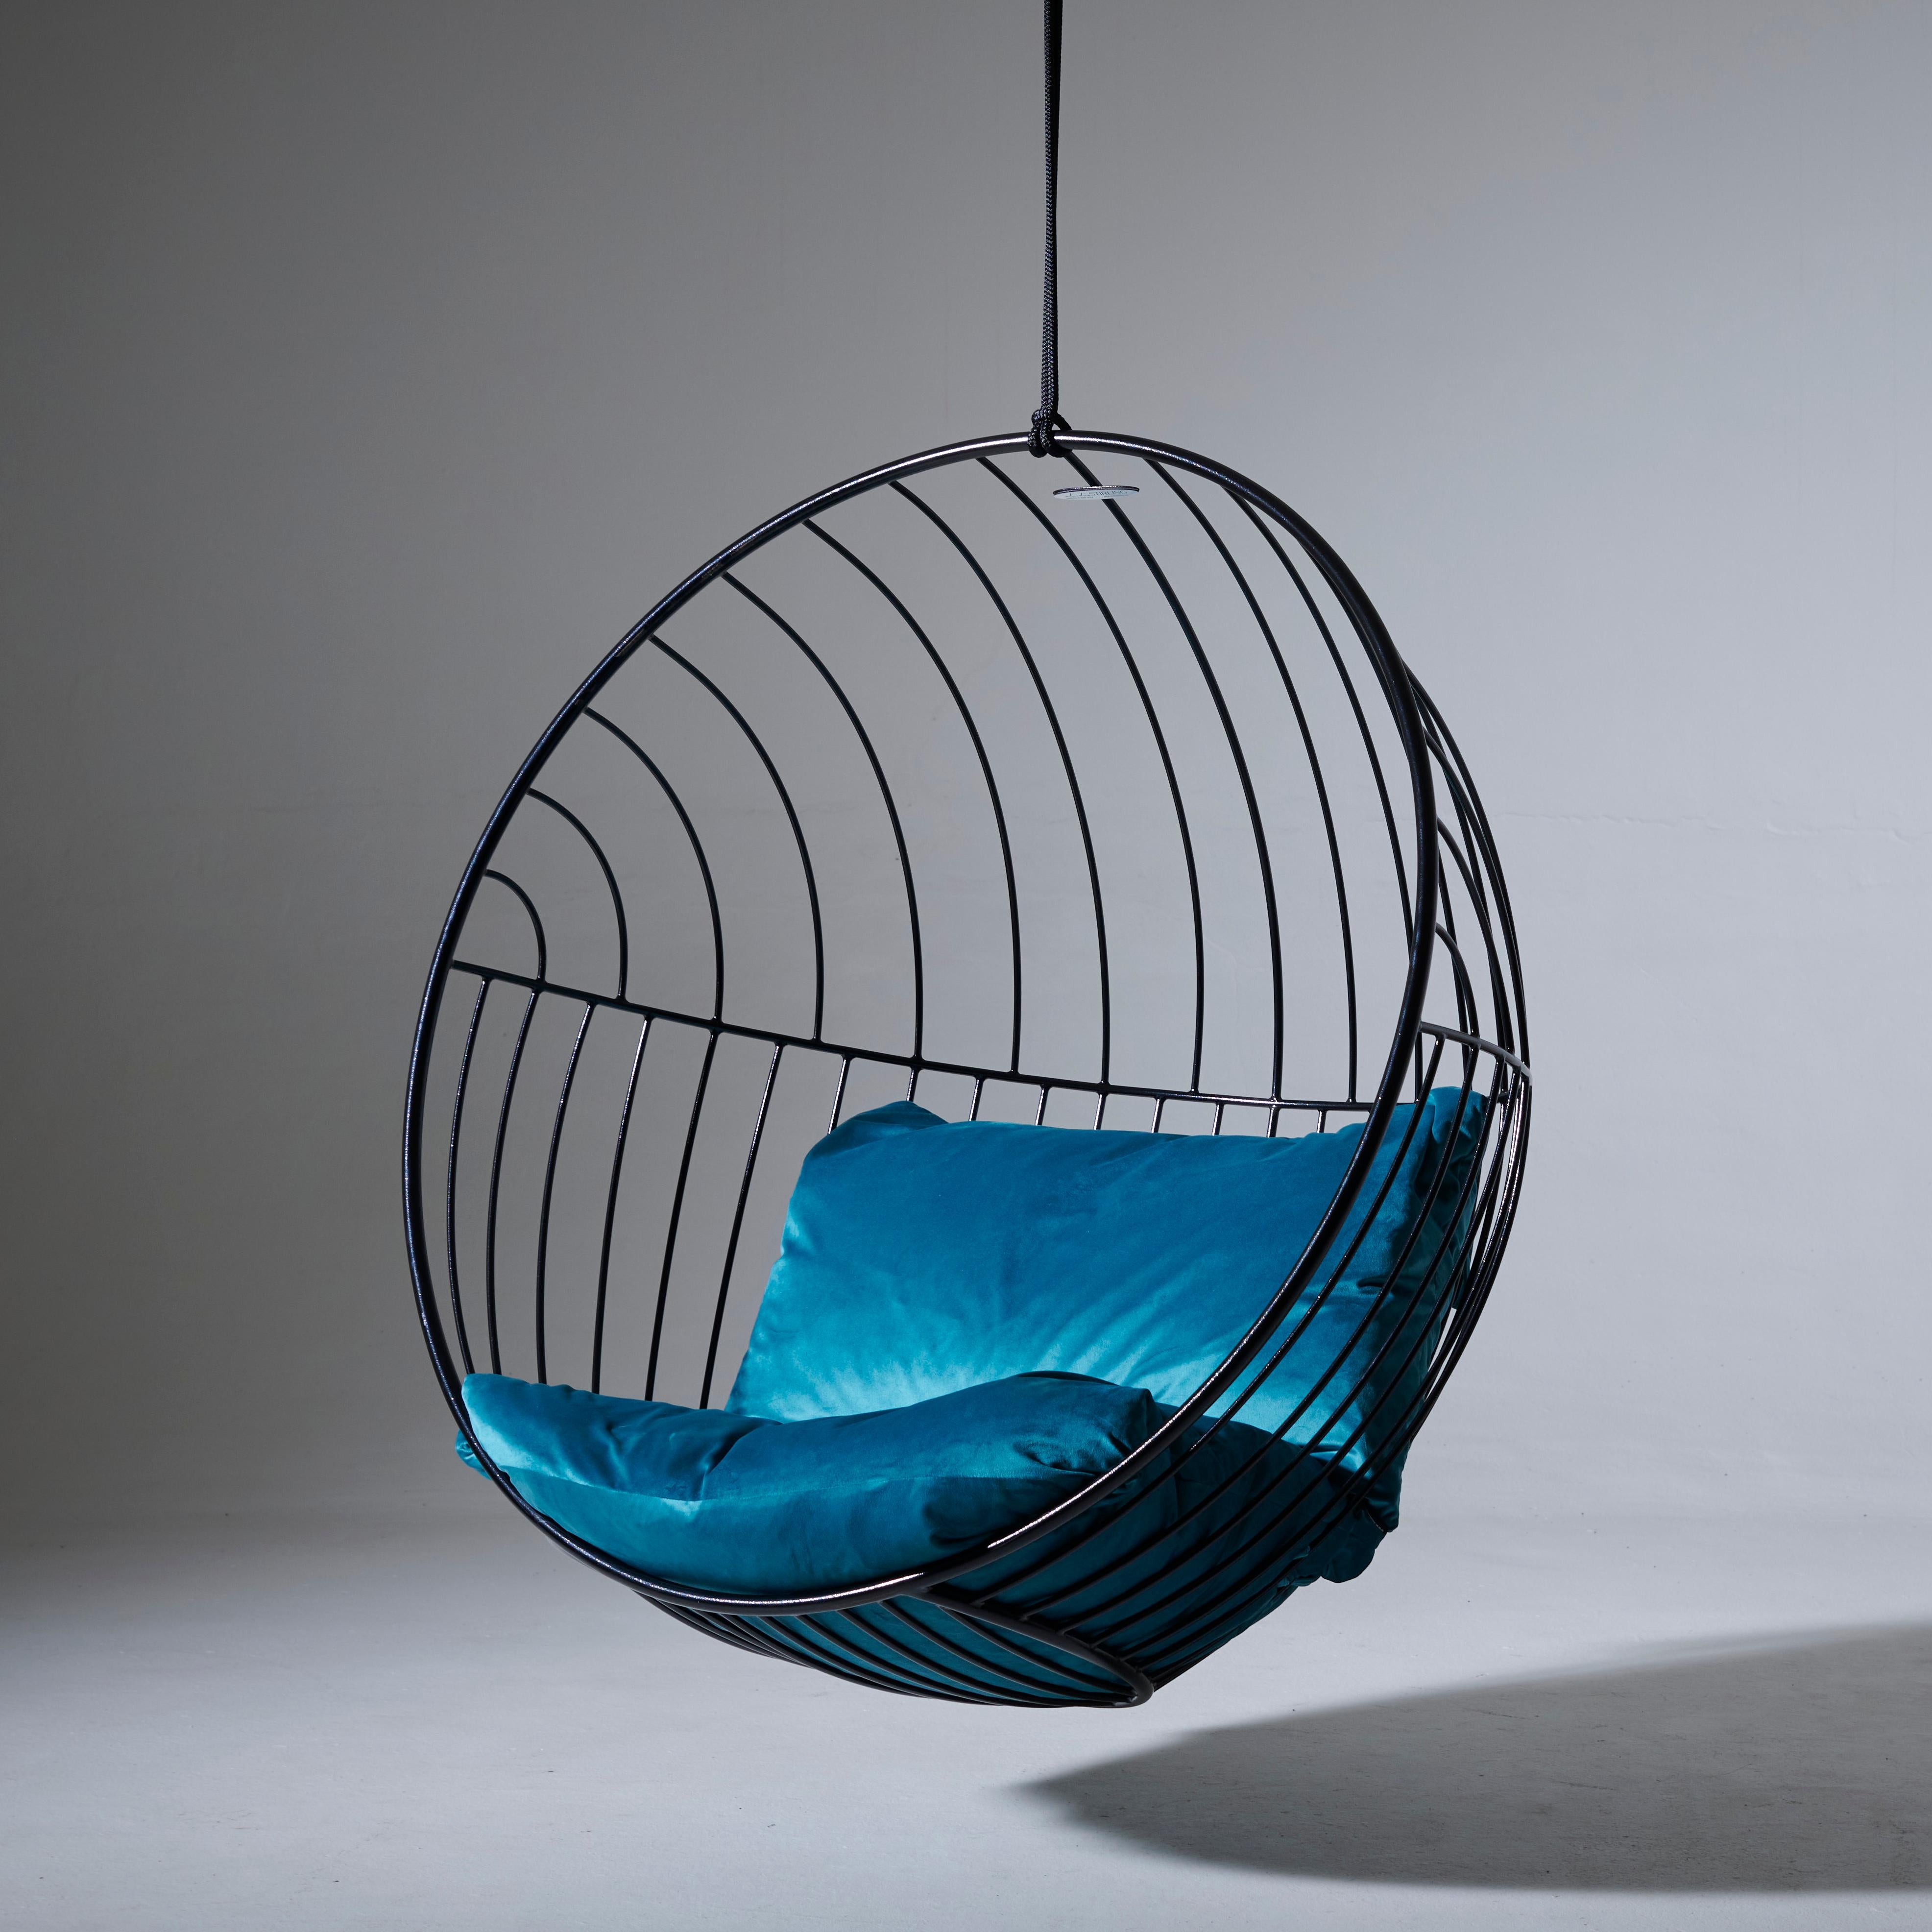 La forme ronde du siège suspendu Bubble crée une sensation de confort. Les motifs modernes sont d'un attrait visuel saisissant.

Le fauteuil a été conçu pour être très confortable et relaxant. Il est idéal pour l'aménagement paysager, les contrats,